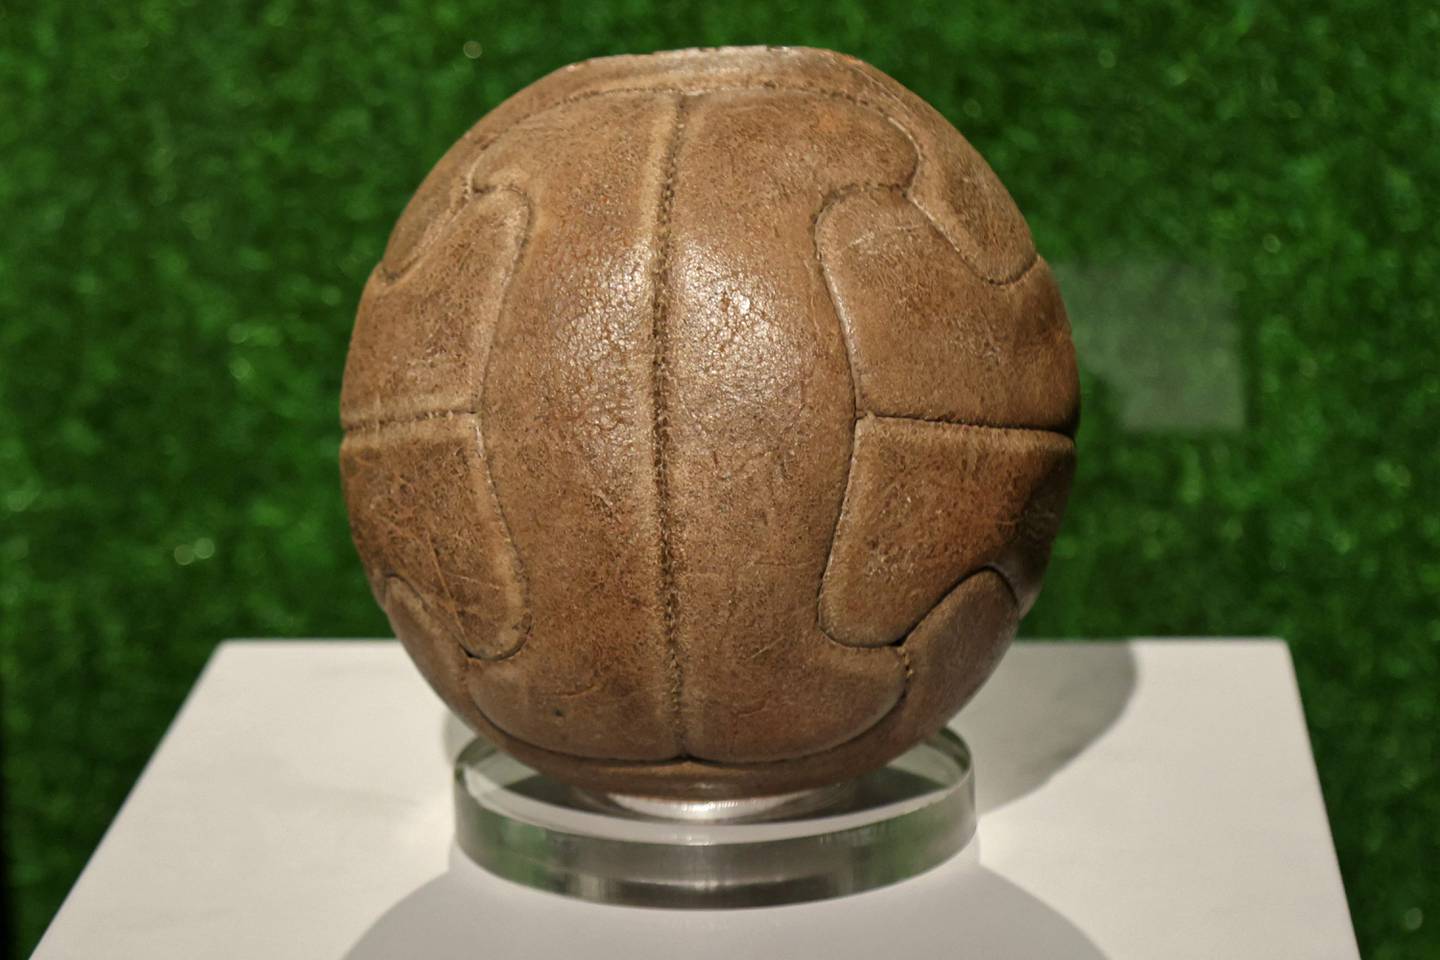 Le ballon de match officiel de la première Coupe du Monde de la FIFA en 1930 exposé à l'exposition World of Football à Doha avant le tournoi de cette année.  AFP